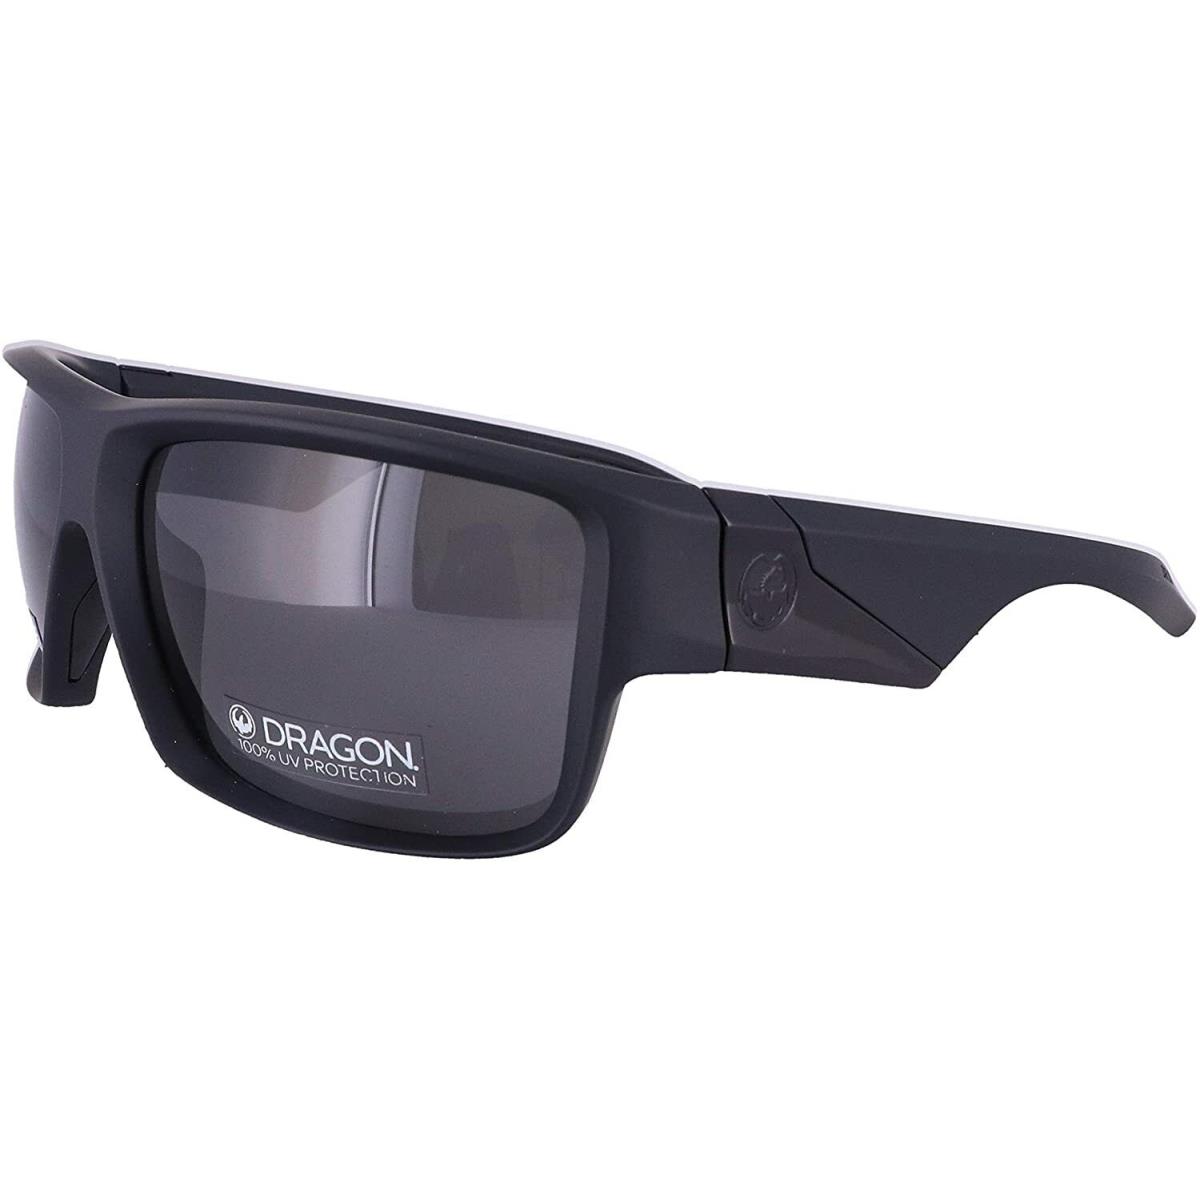 Dragon Alliance sunglasses  - Black Frame, Gray Lens 0